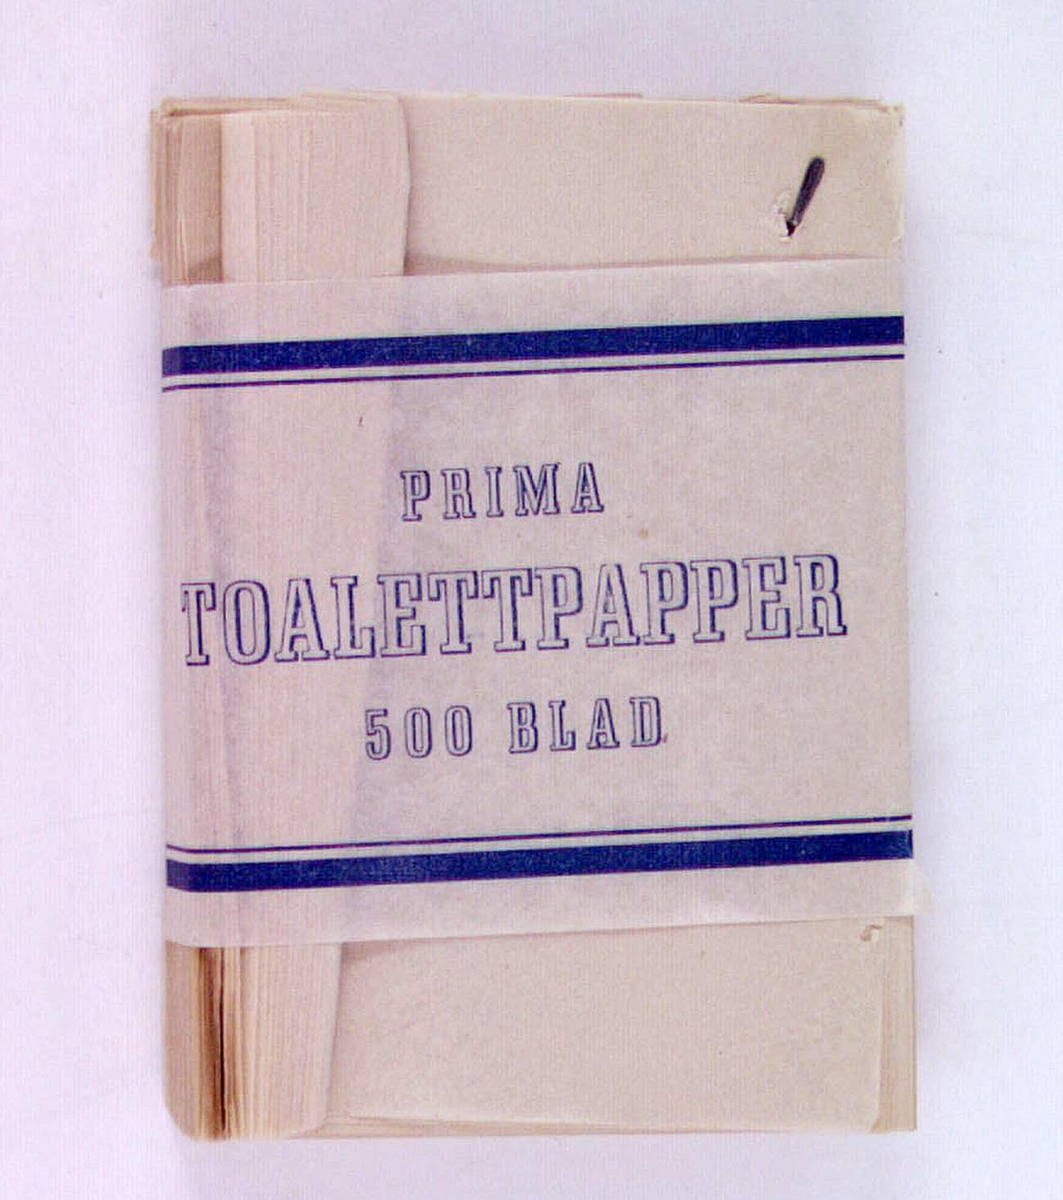 En bunt toalettpapper med text på maggördeln: "Prima toalettpapper 500 blad".